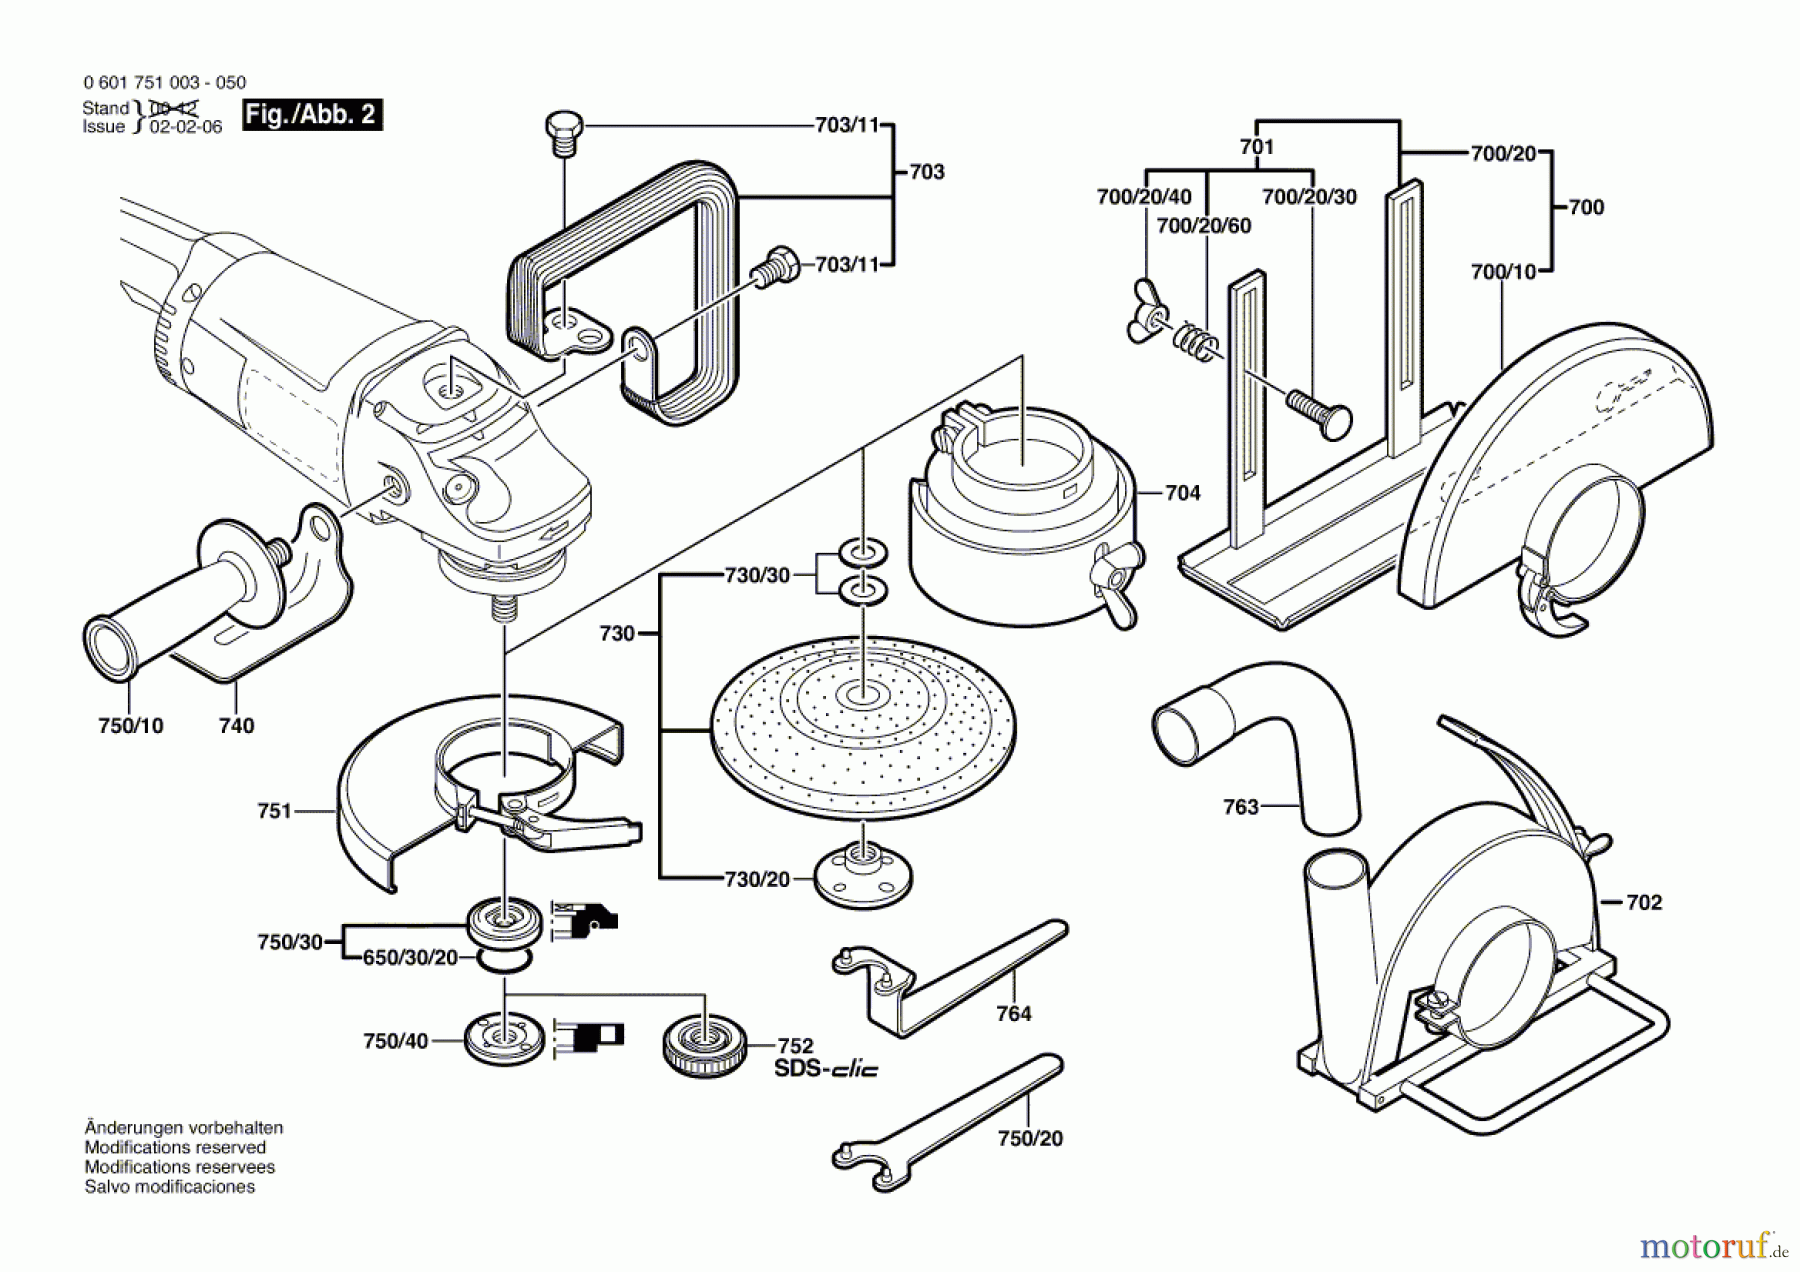  Bosch Werkzeug Winkelschleifer GWS 20-180 Seite 2